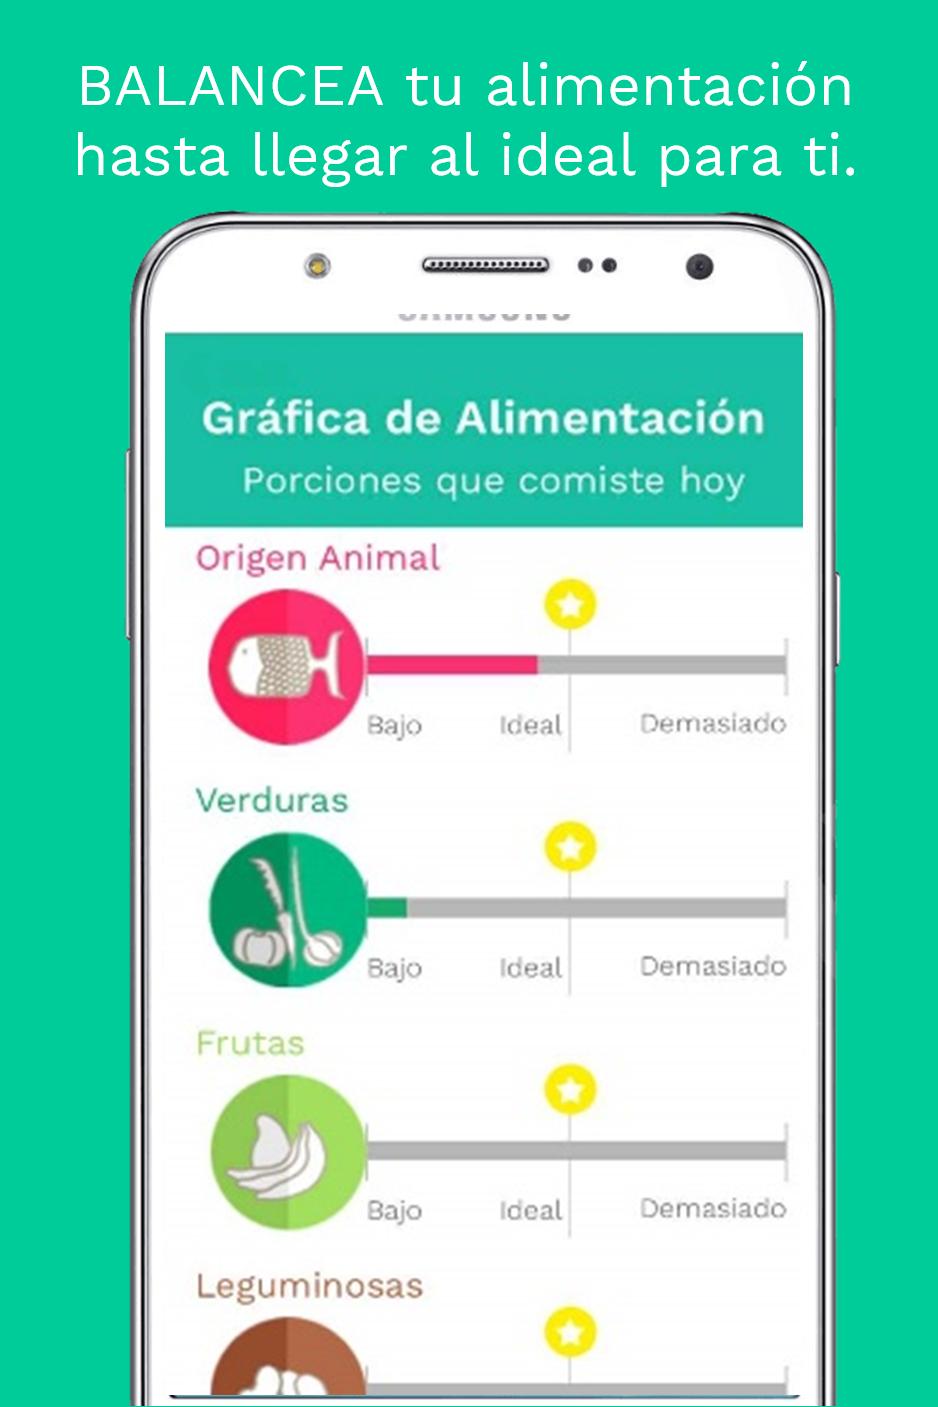 ‎Peater: Diéta & Egészség az App Store-ban